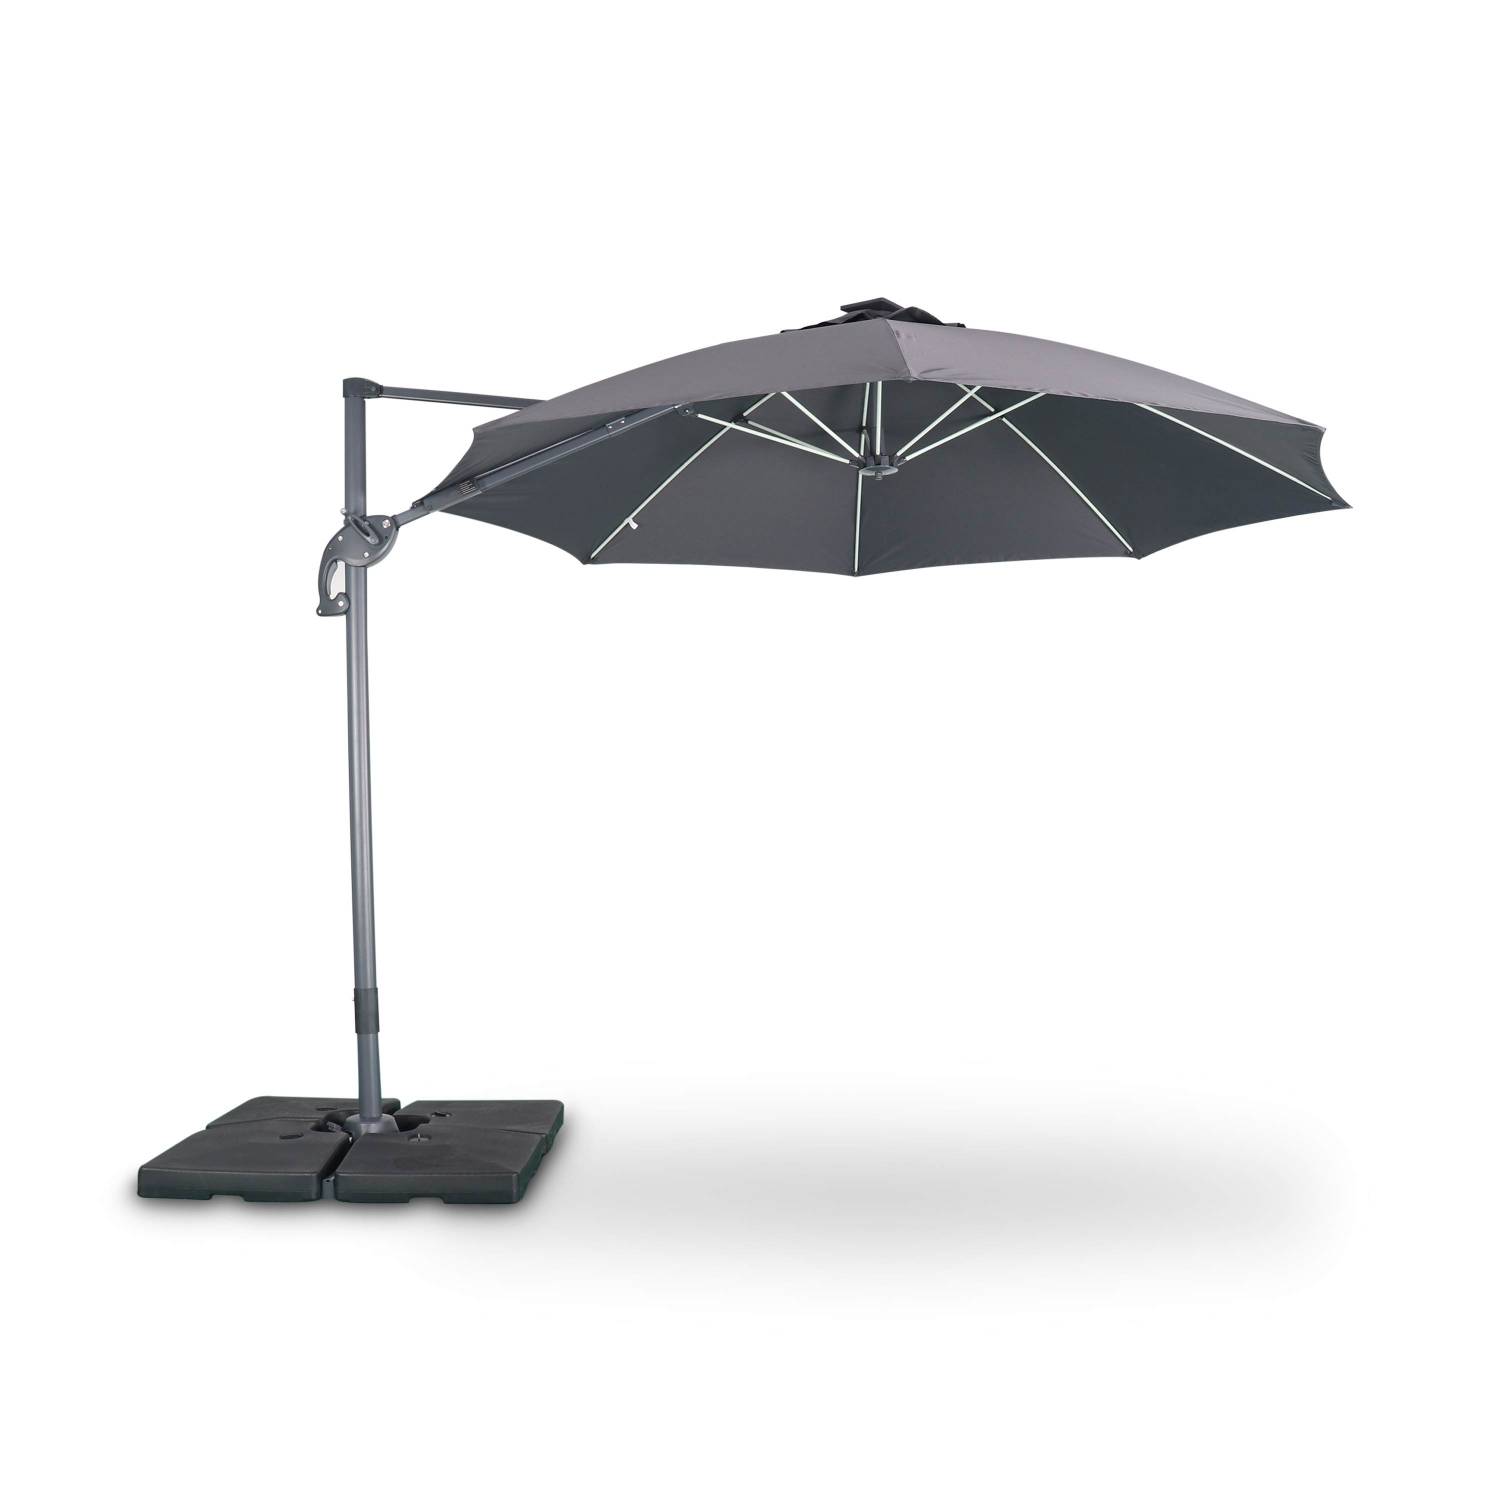 Ombrellone led tondo decentrato Ø300 cm - Dinard - Grigio - ombrellone decentrato, basculante, ribaltabile | sweeek